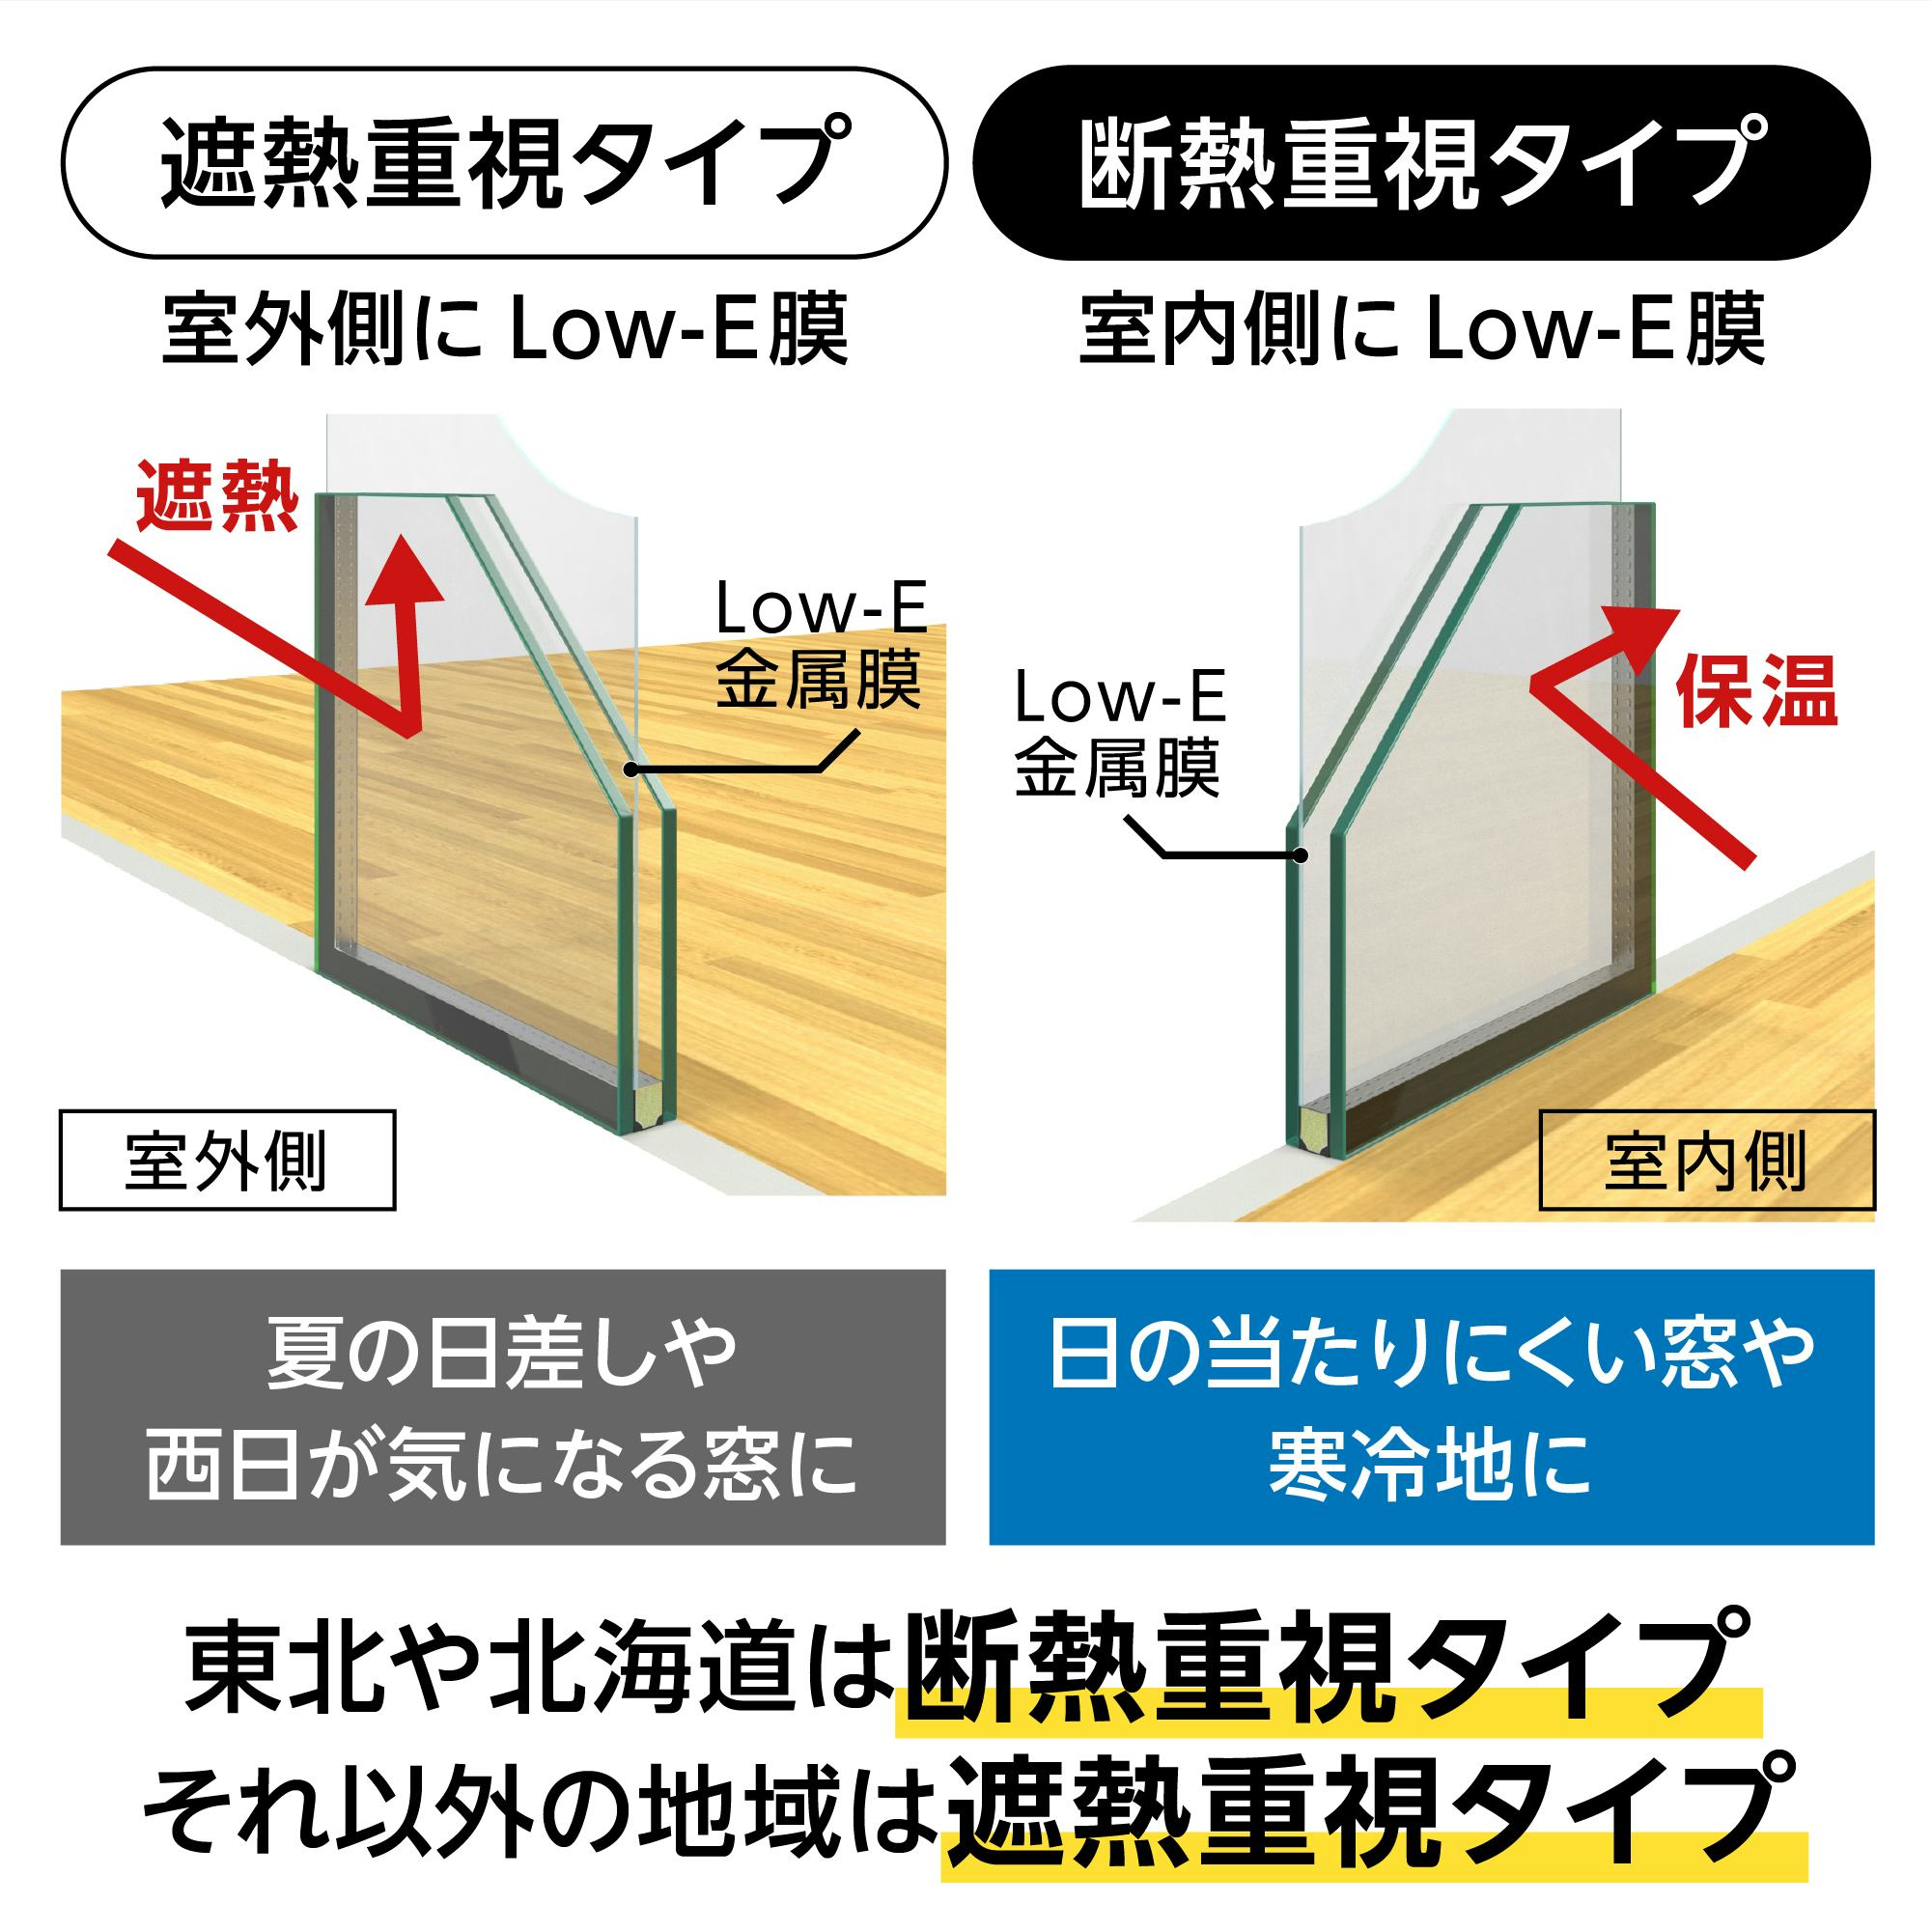 結露防止ガラス ライト (Low-E スリムペアガラス) - 遮熱・断熱の2タイプから選択可能